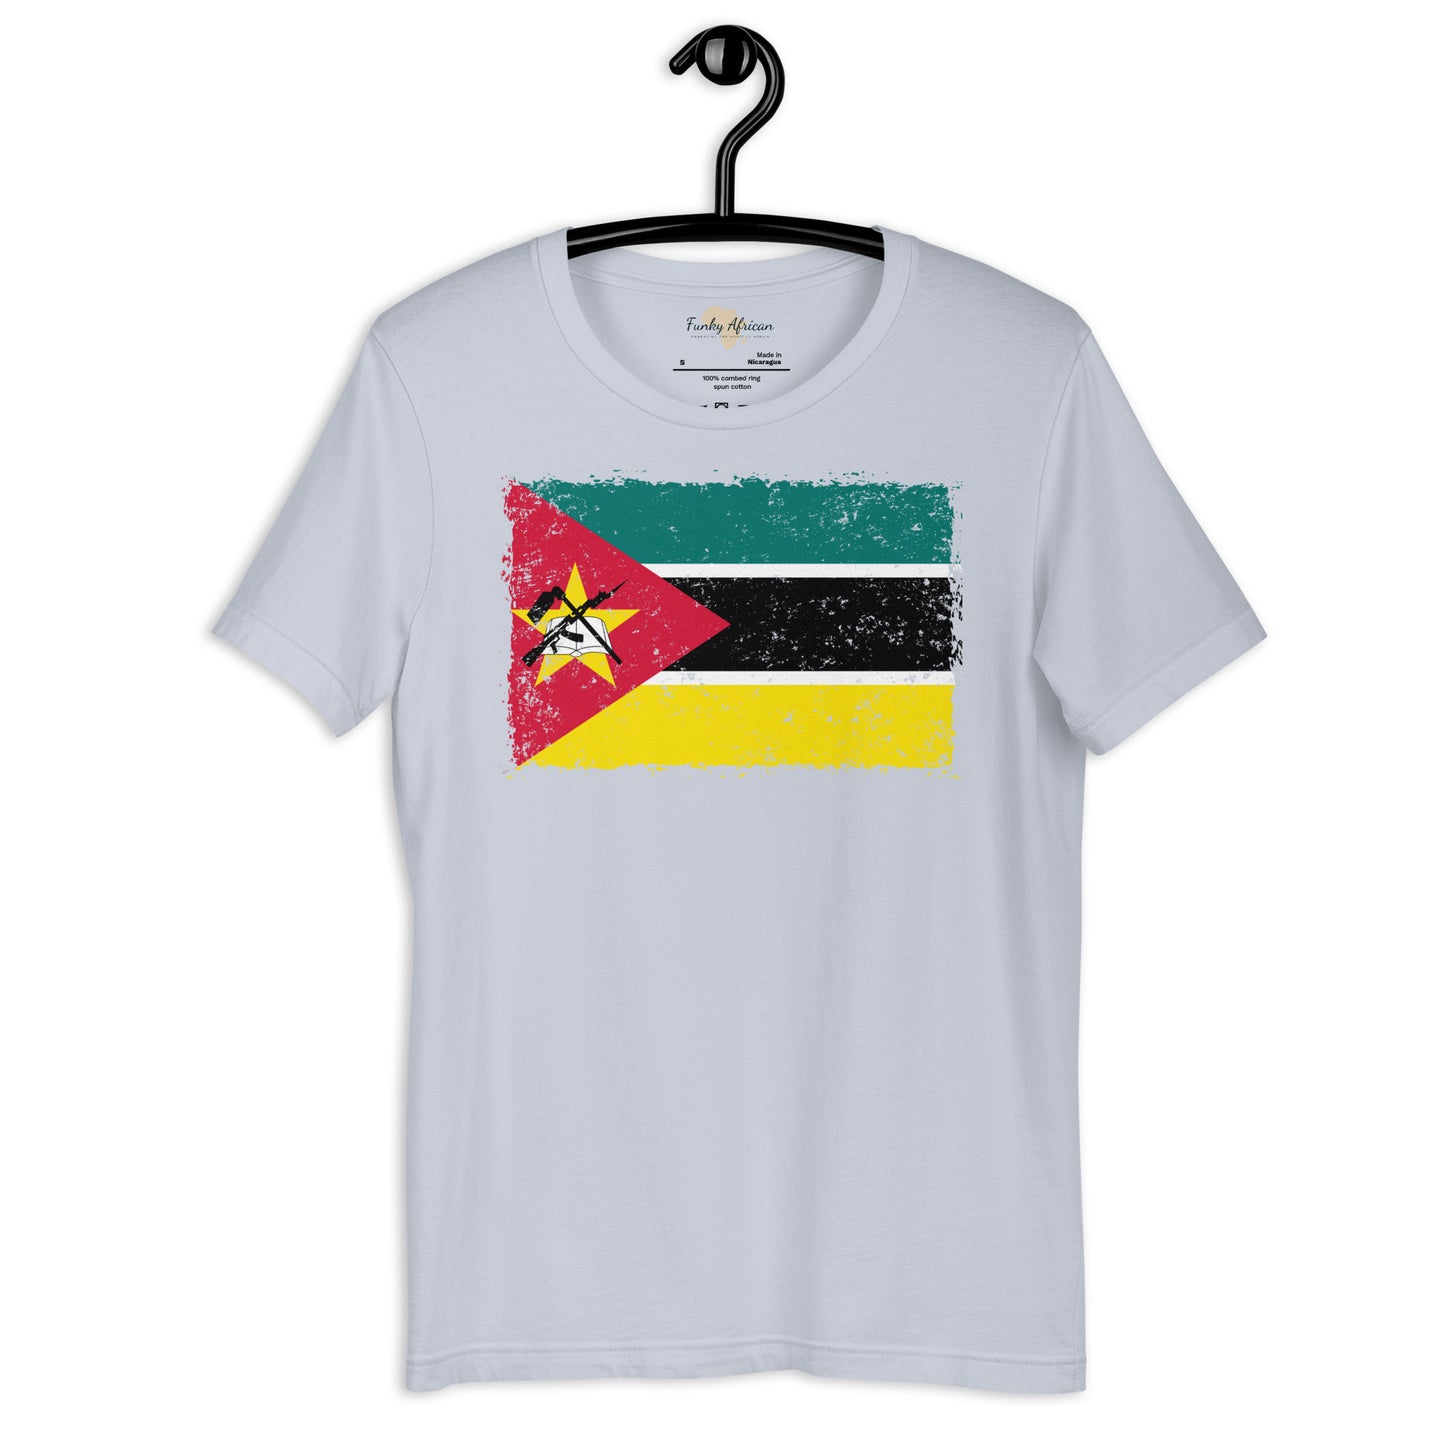 Mozambique grunge unisex tee